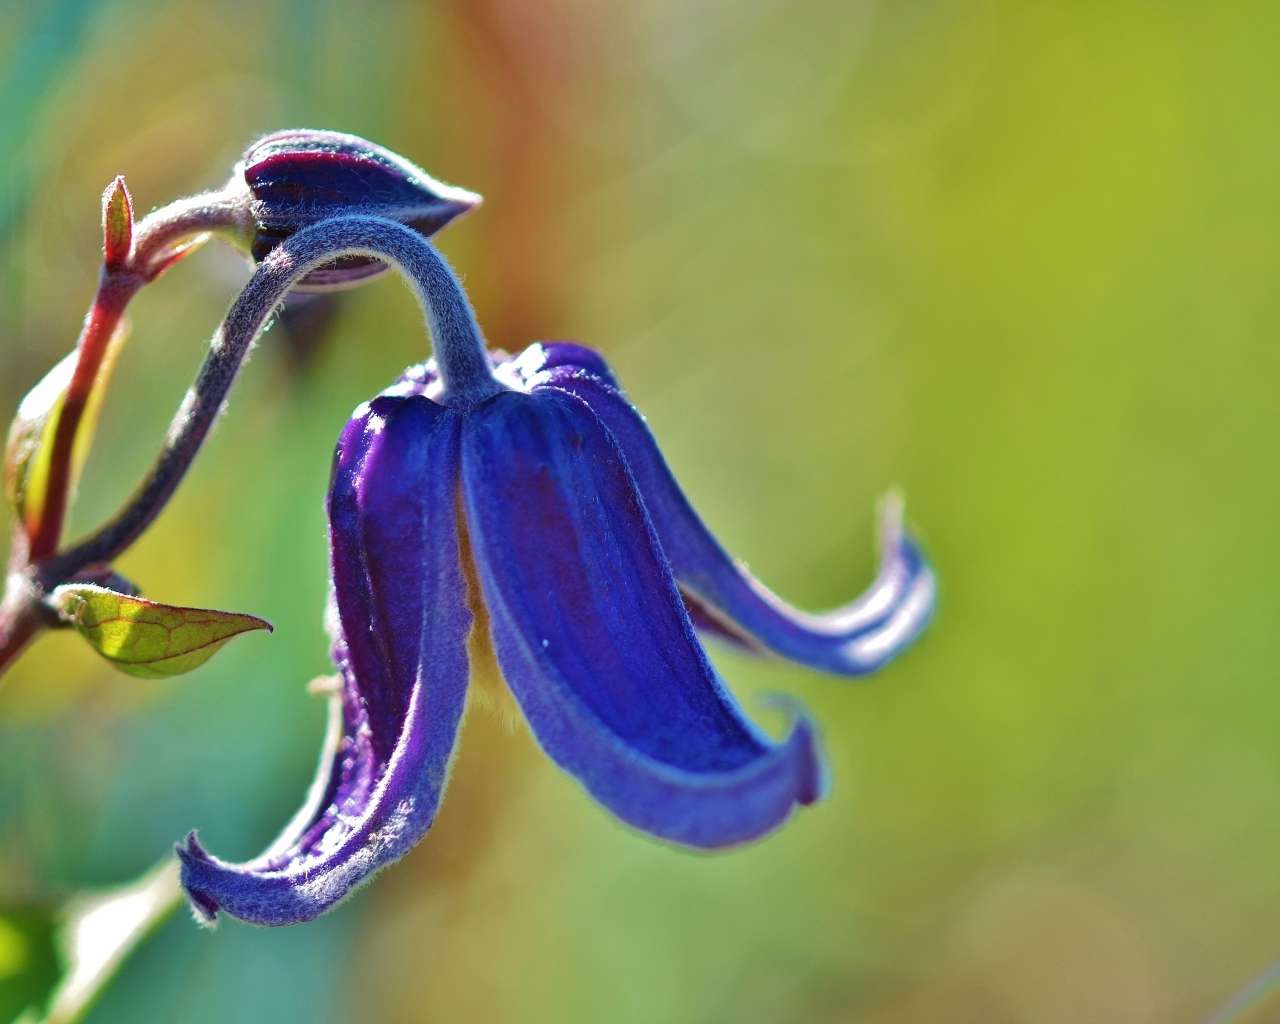 Blue bell flower close up